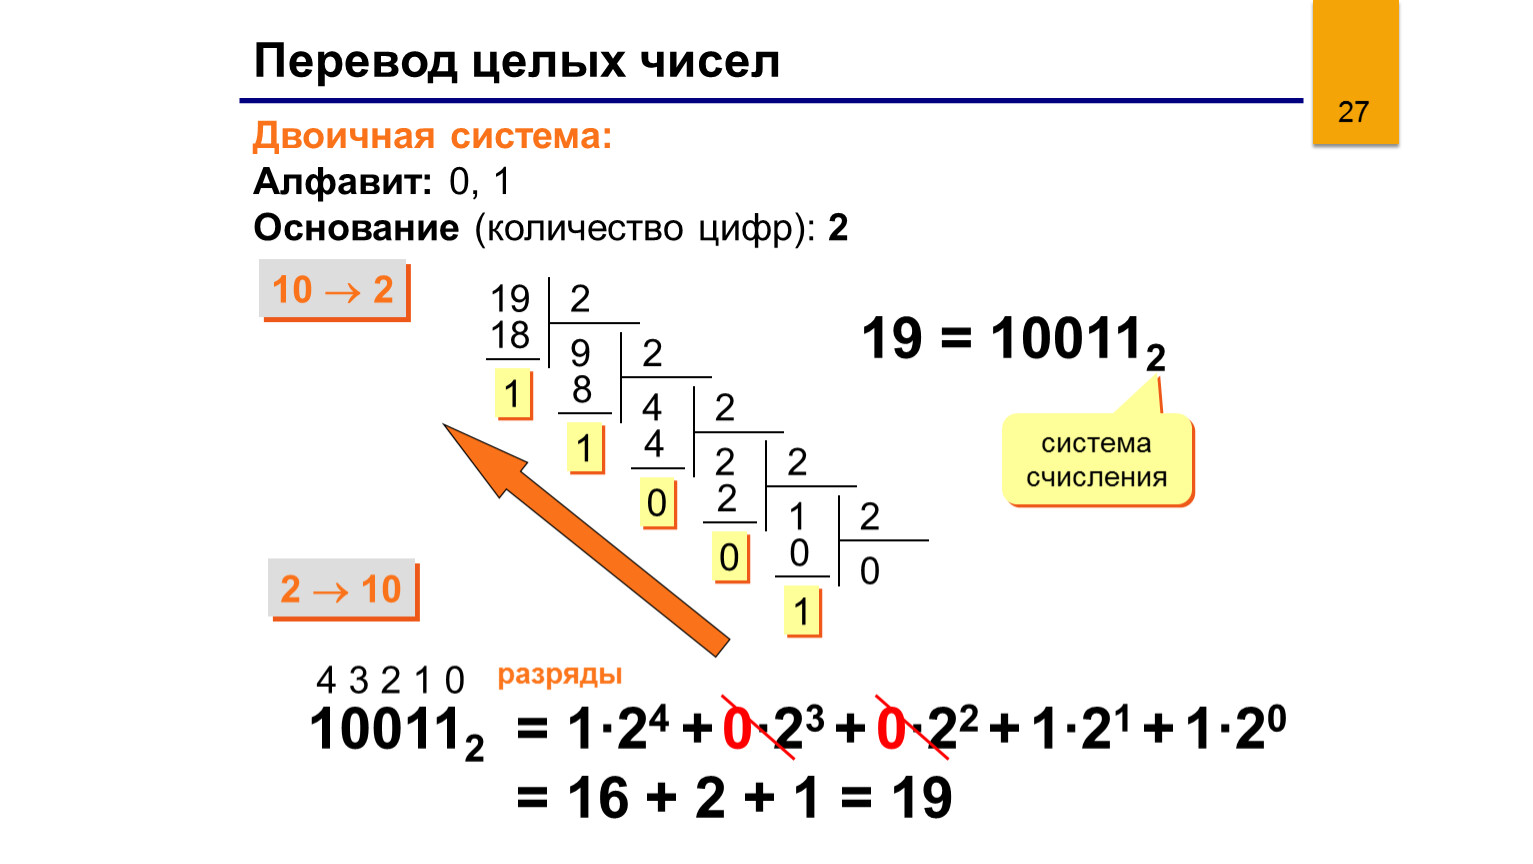 1024 в двоичной. 23 В 10 перевести в двоичную систему счисления. Число 4 в двоичной системе счисления. 23 В десятичной системе счисления перевести в двоичную систему. Переведите двоичное число в десятичное.